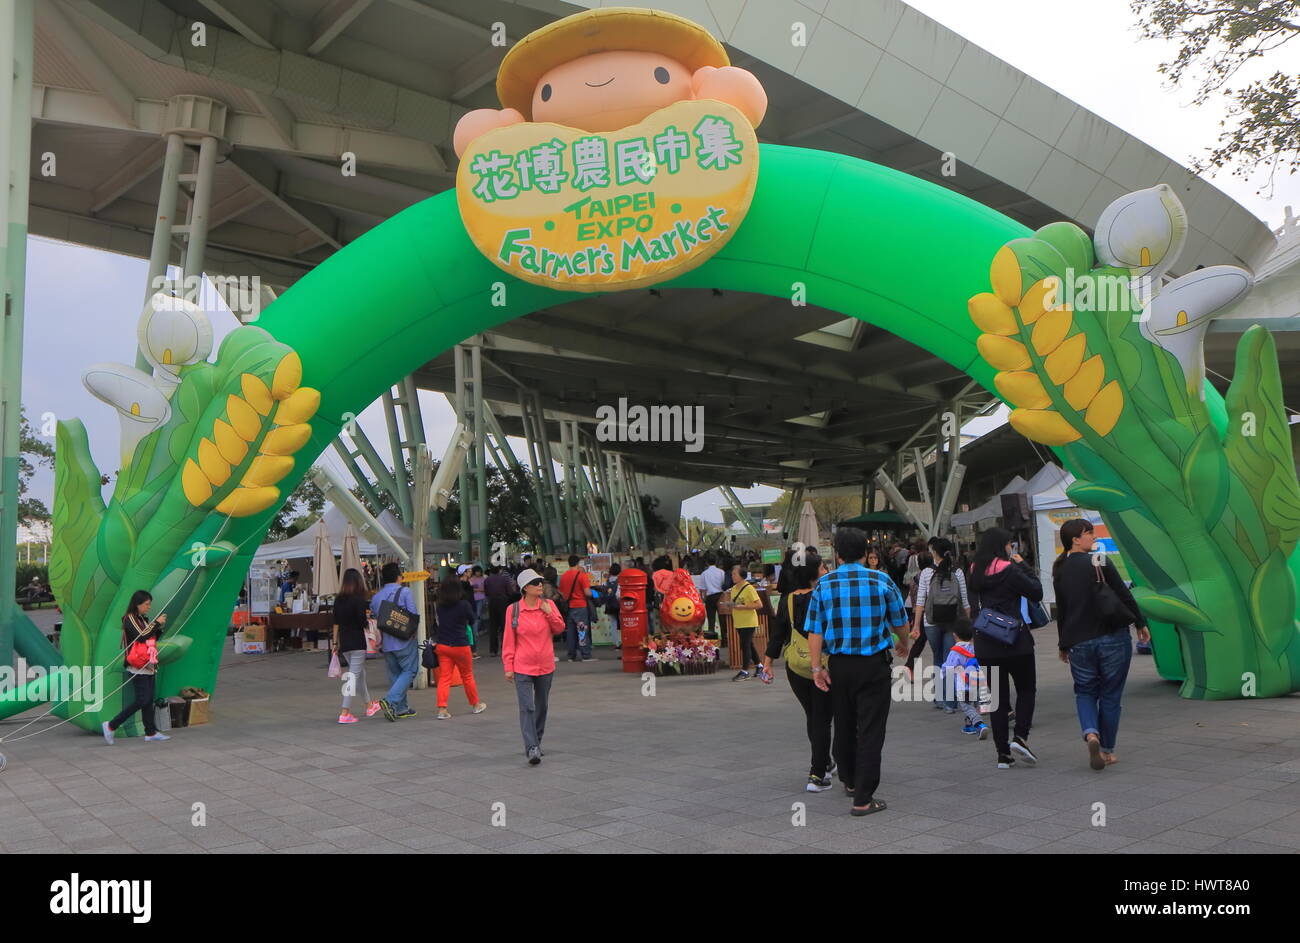 People visit Taipei Expo Park farmers market in Taipei Taiwan. Stock Photo